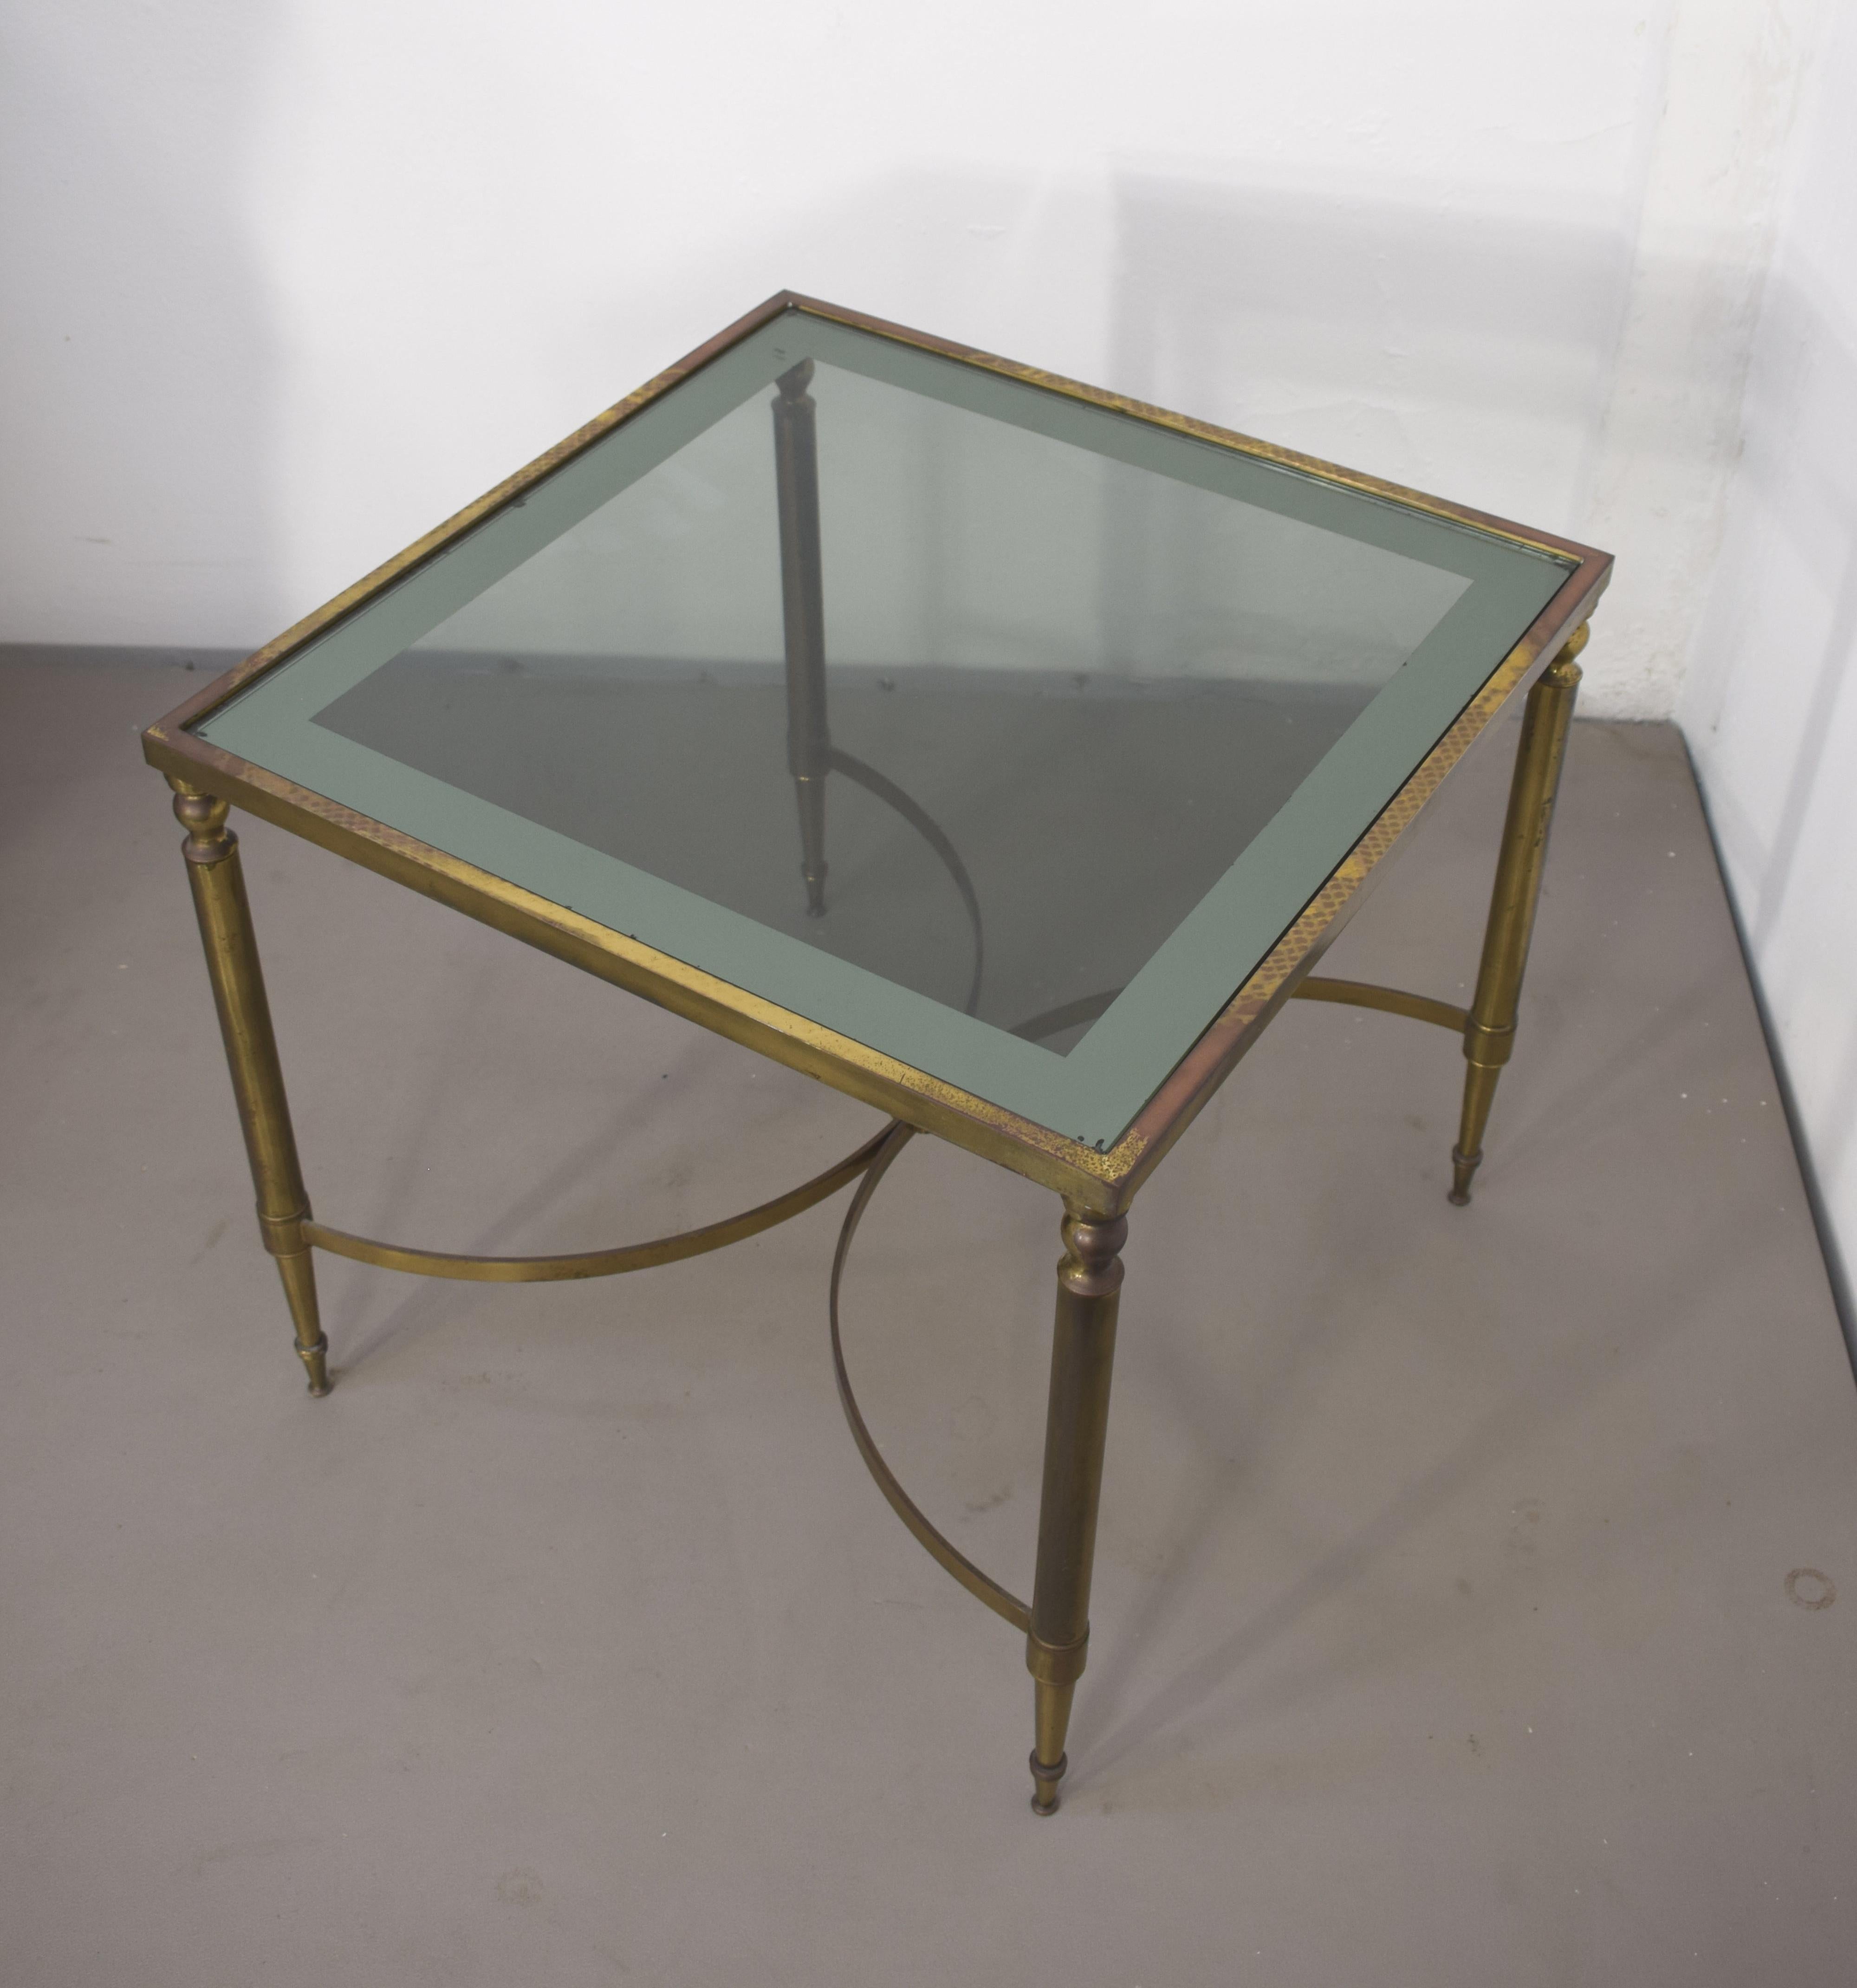 Table basse italienne, laiton et verre fumé, années 1950.

Dimensions : H= 45 cm ; L= 50 cm ; P= 50 cm : H= 45 cm ; L= 50 cm ; P= 50 cm.